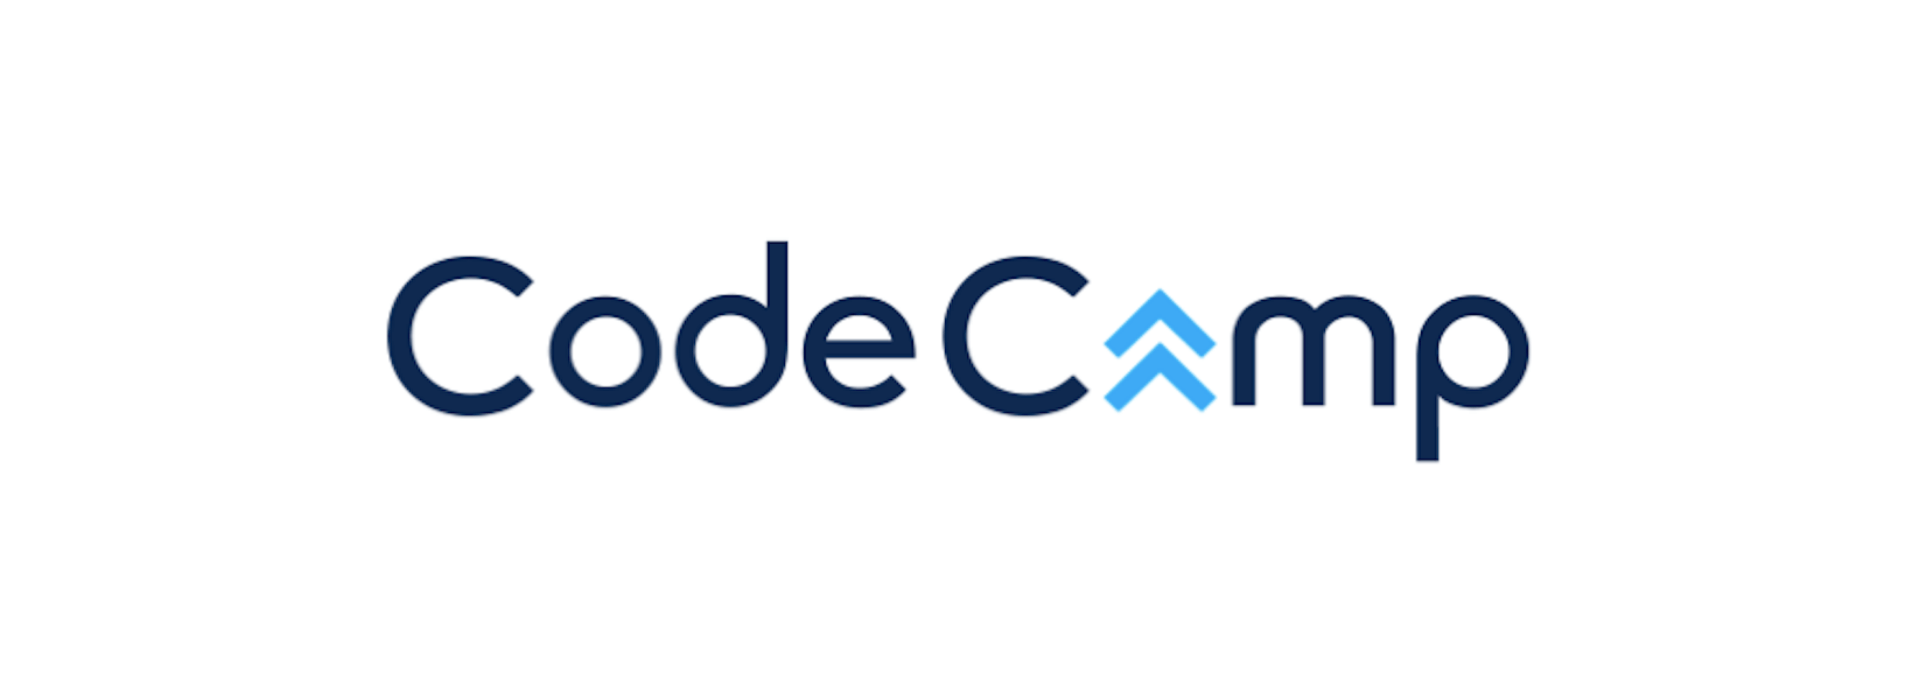 コードキャンプのロゴ